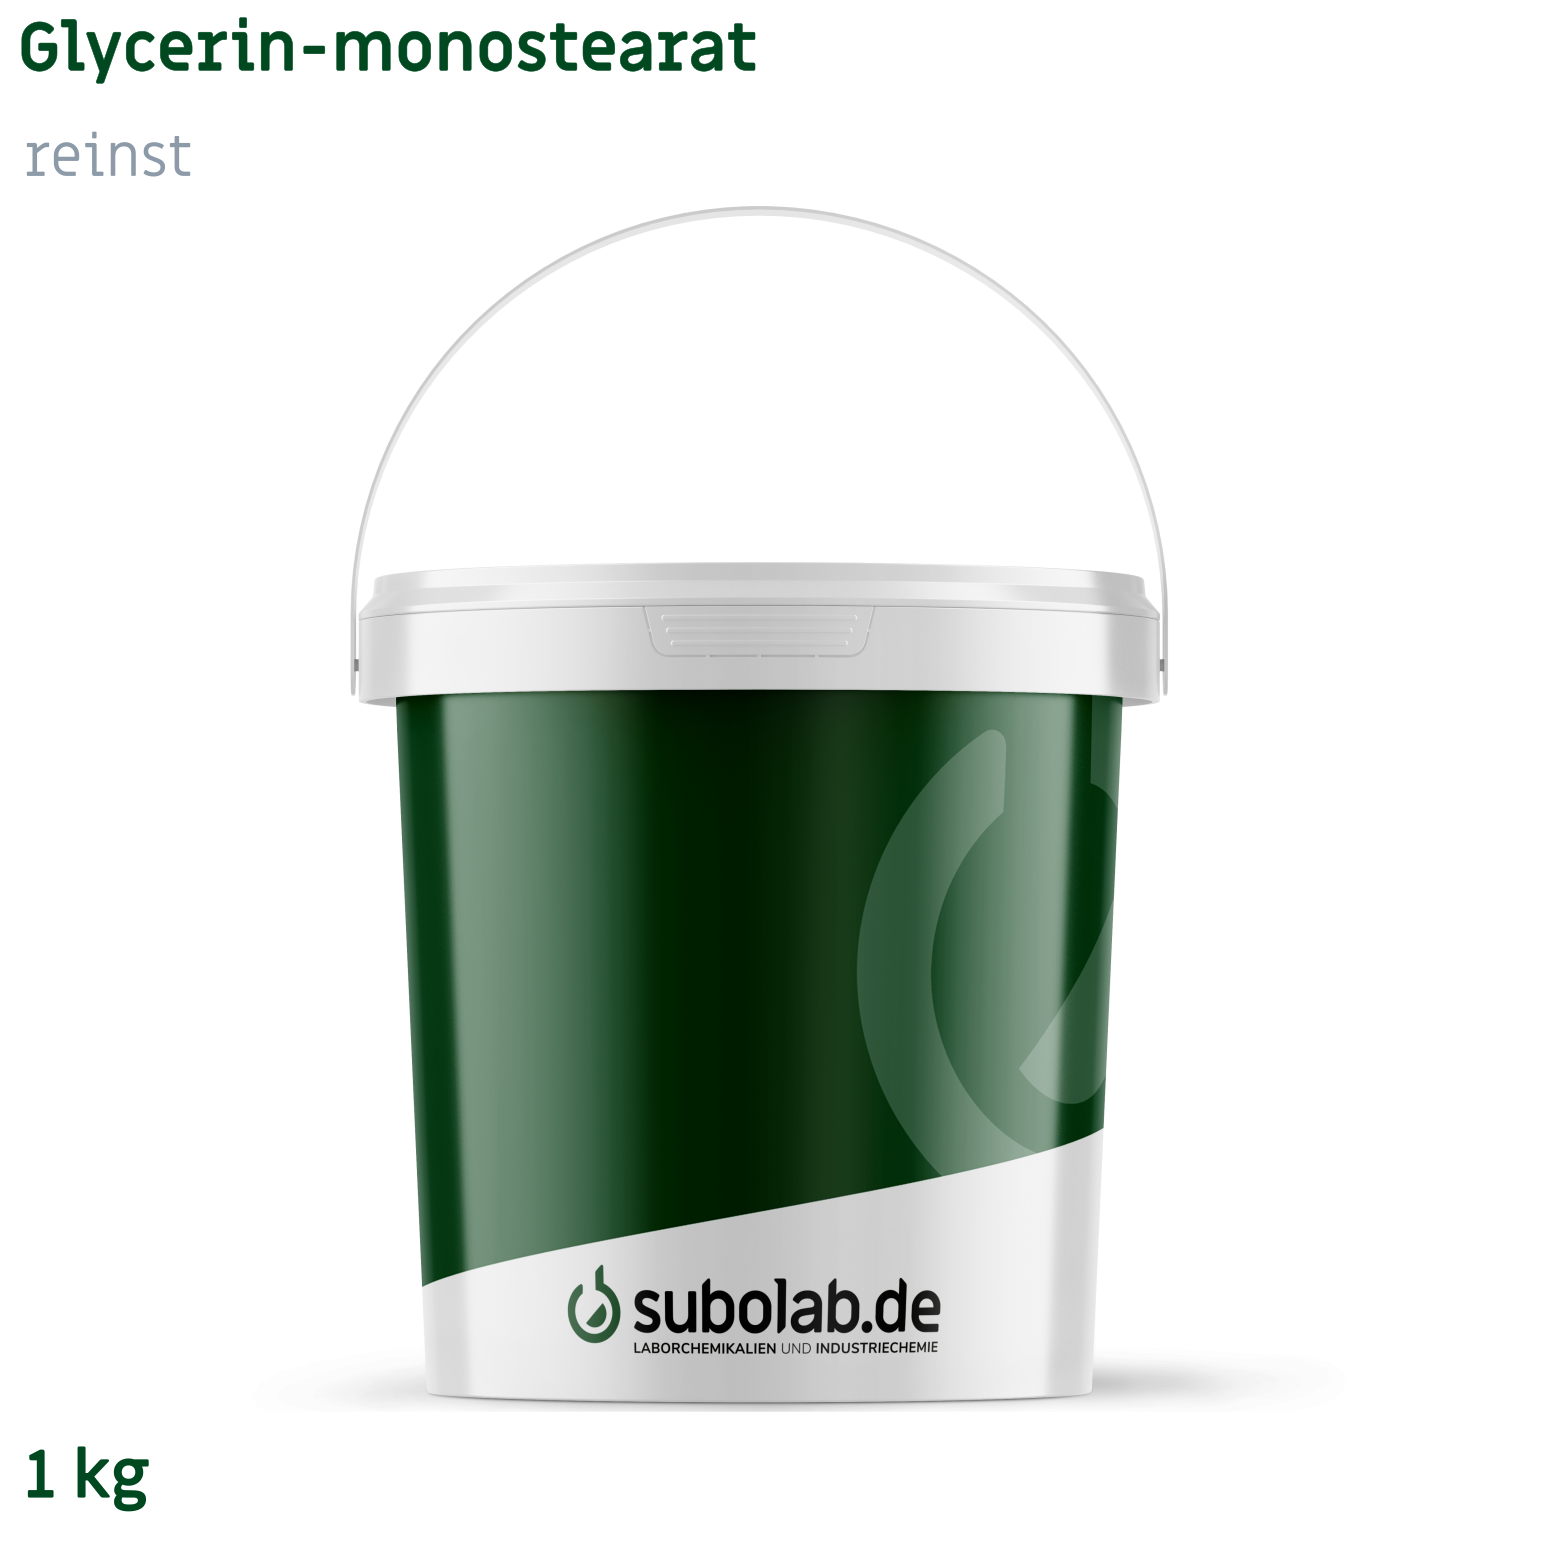 Bild von Glycerin-monostearat rein (1 kg)